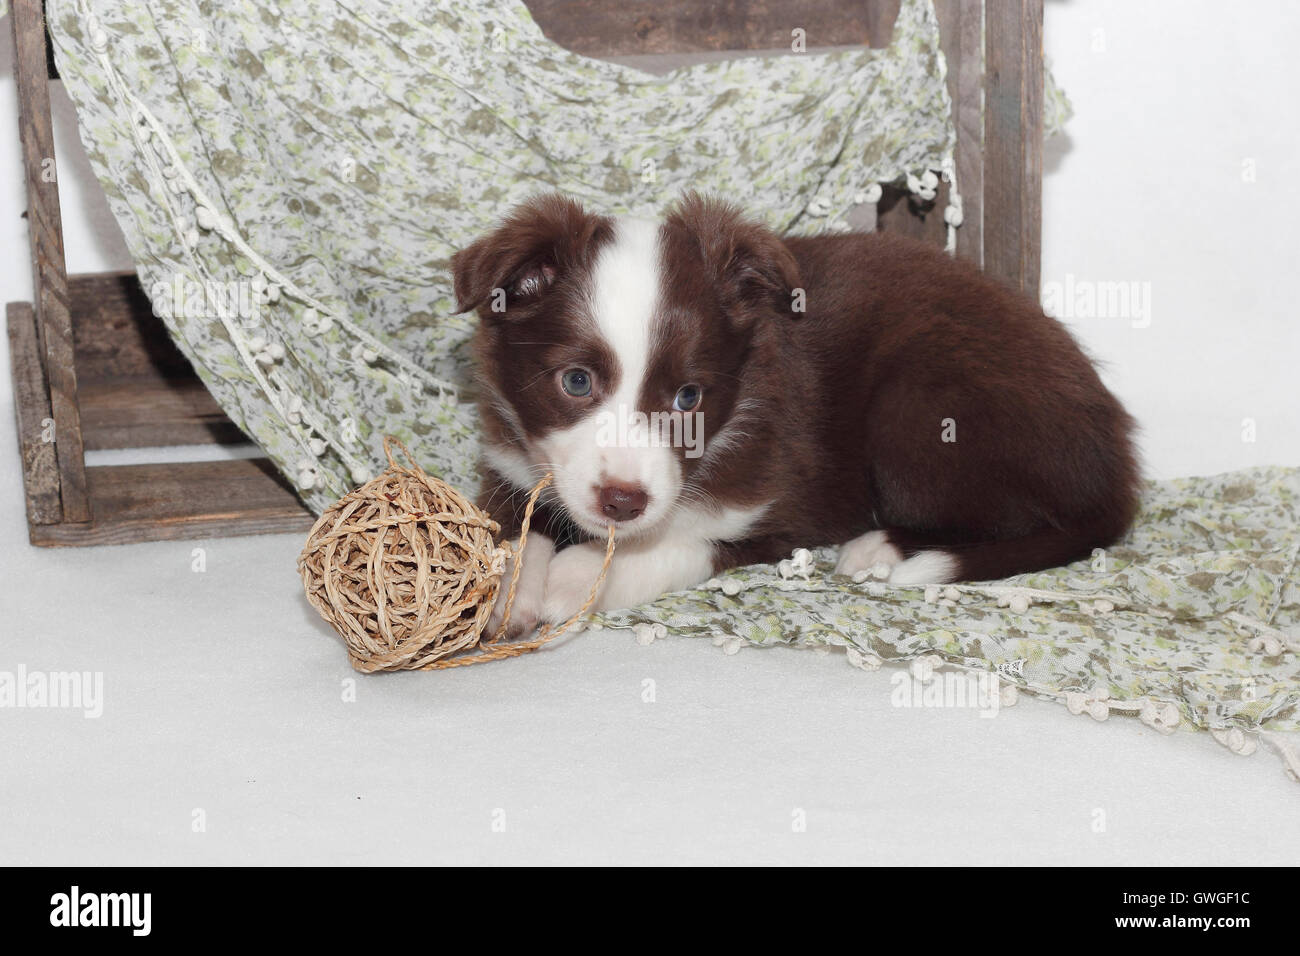 American Shepherd miniature. Puppy (6 semaines) jouant avec un noeud. Studio photo. Allemagne Banque D'Images